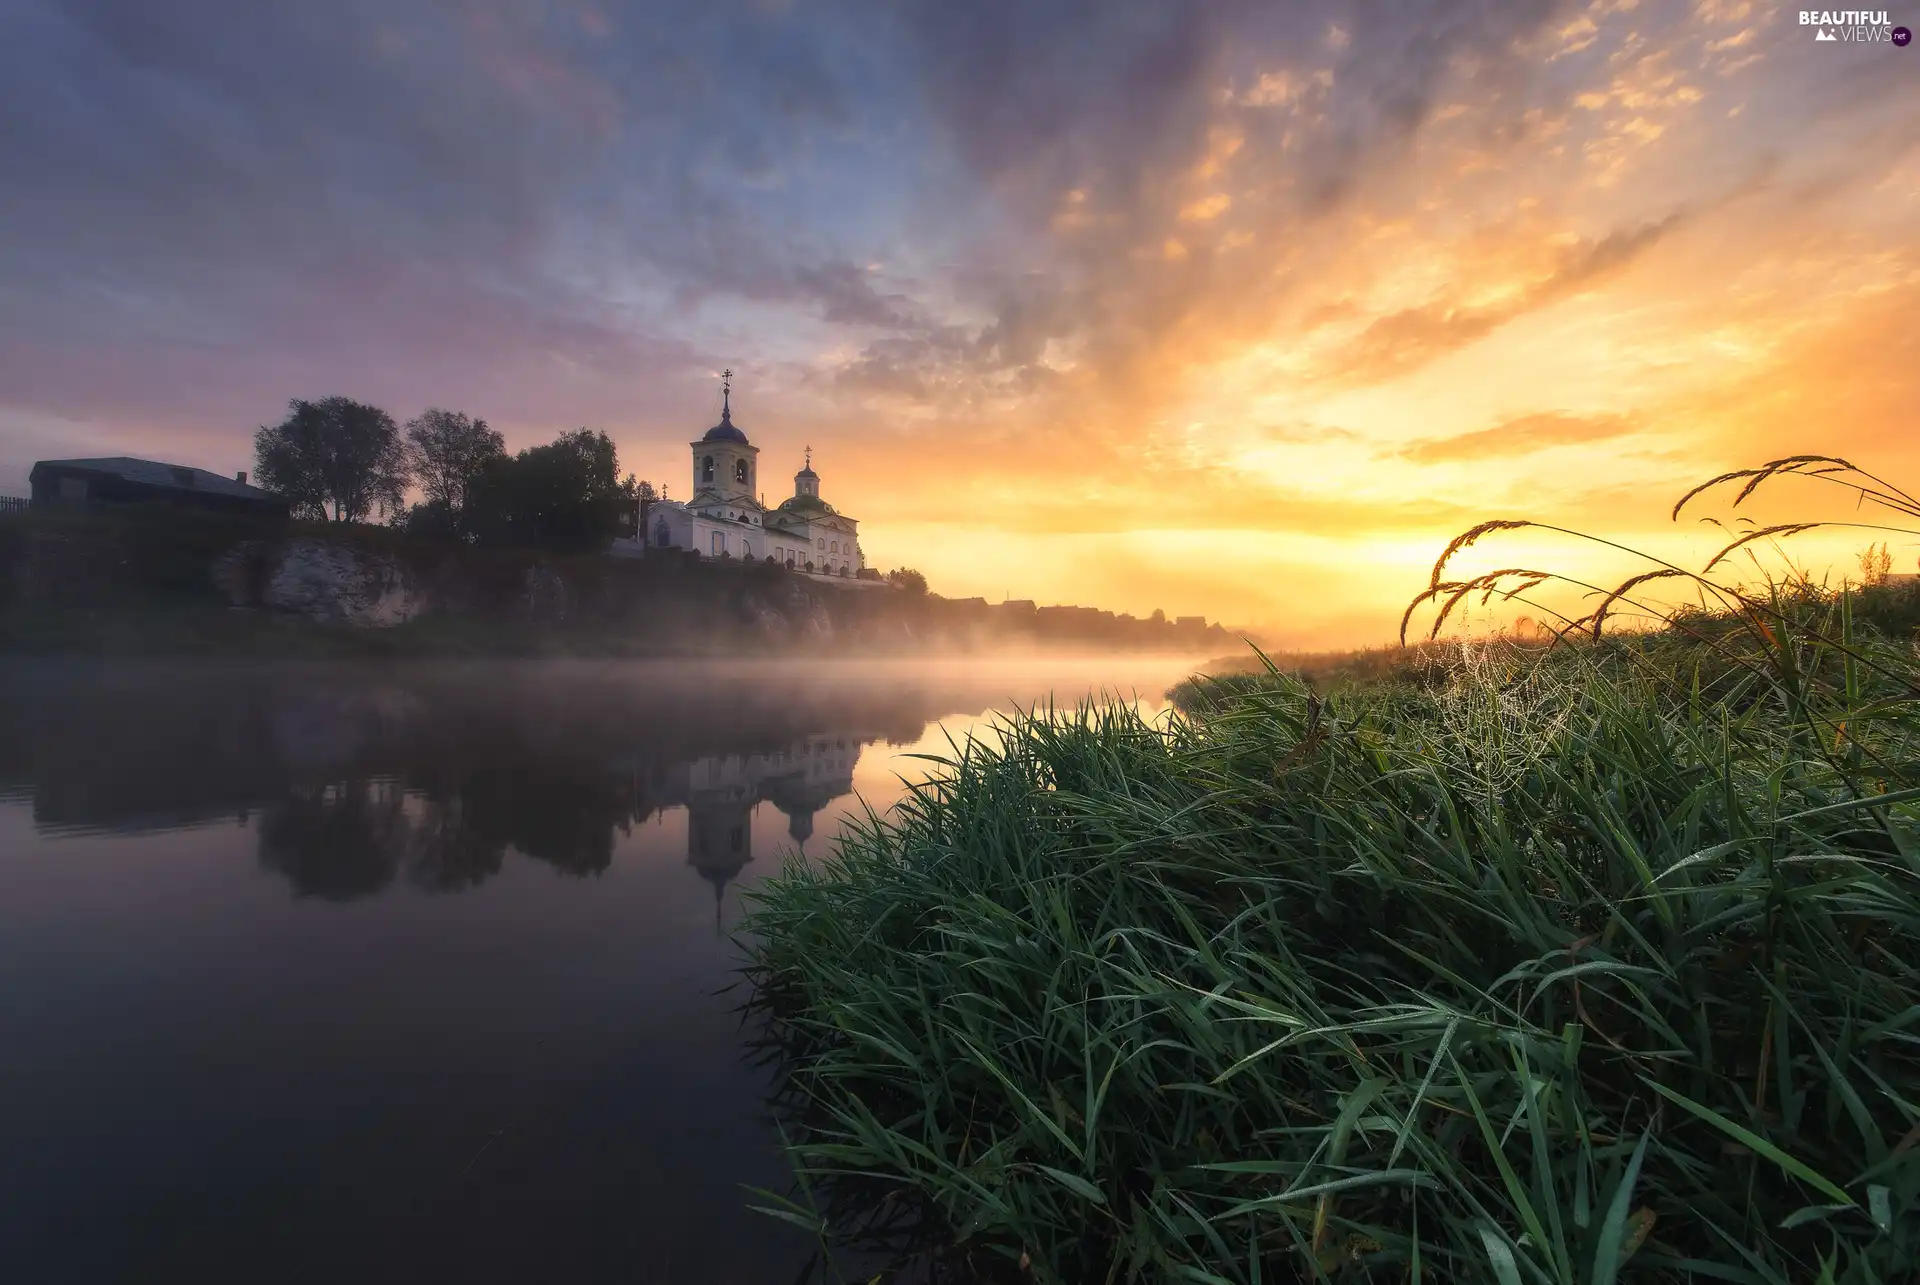 Sunrise, River, grass, Web, Fog, Cerkiew